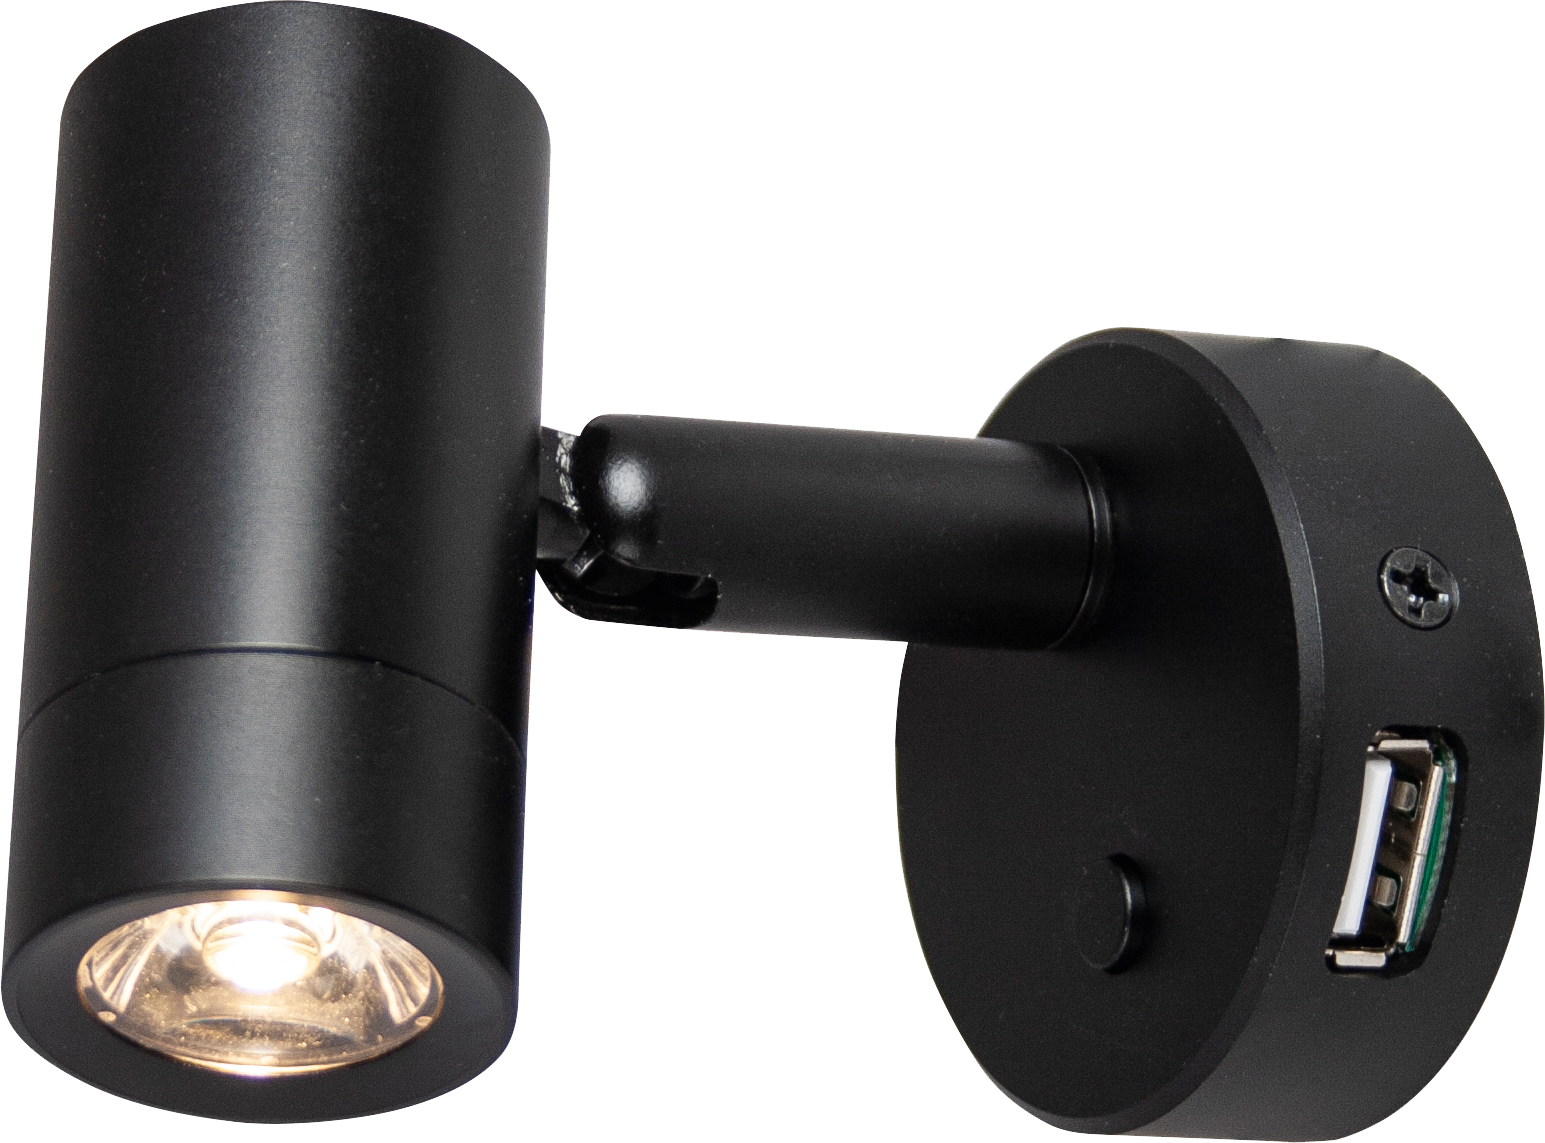 LED-Spot Mini Tube D4 chrom